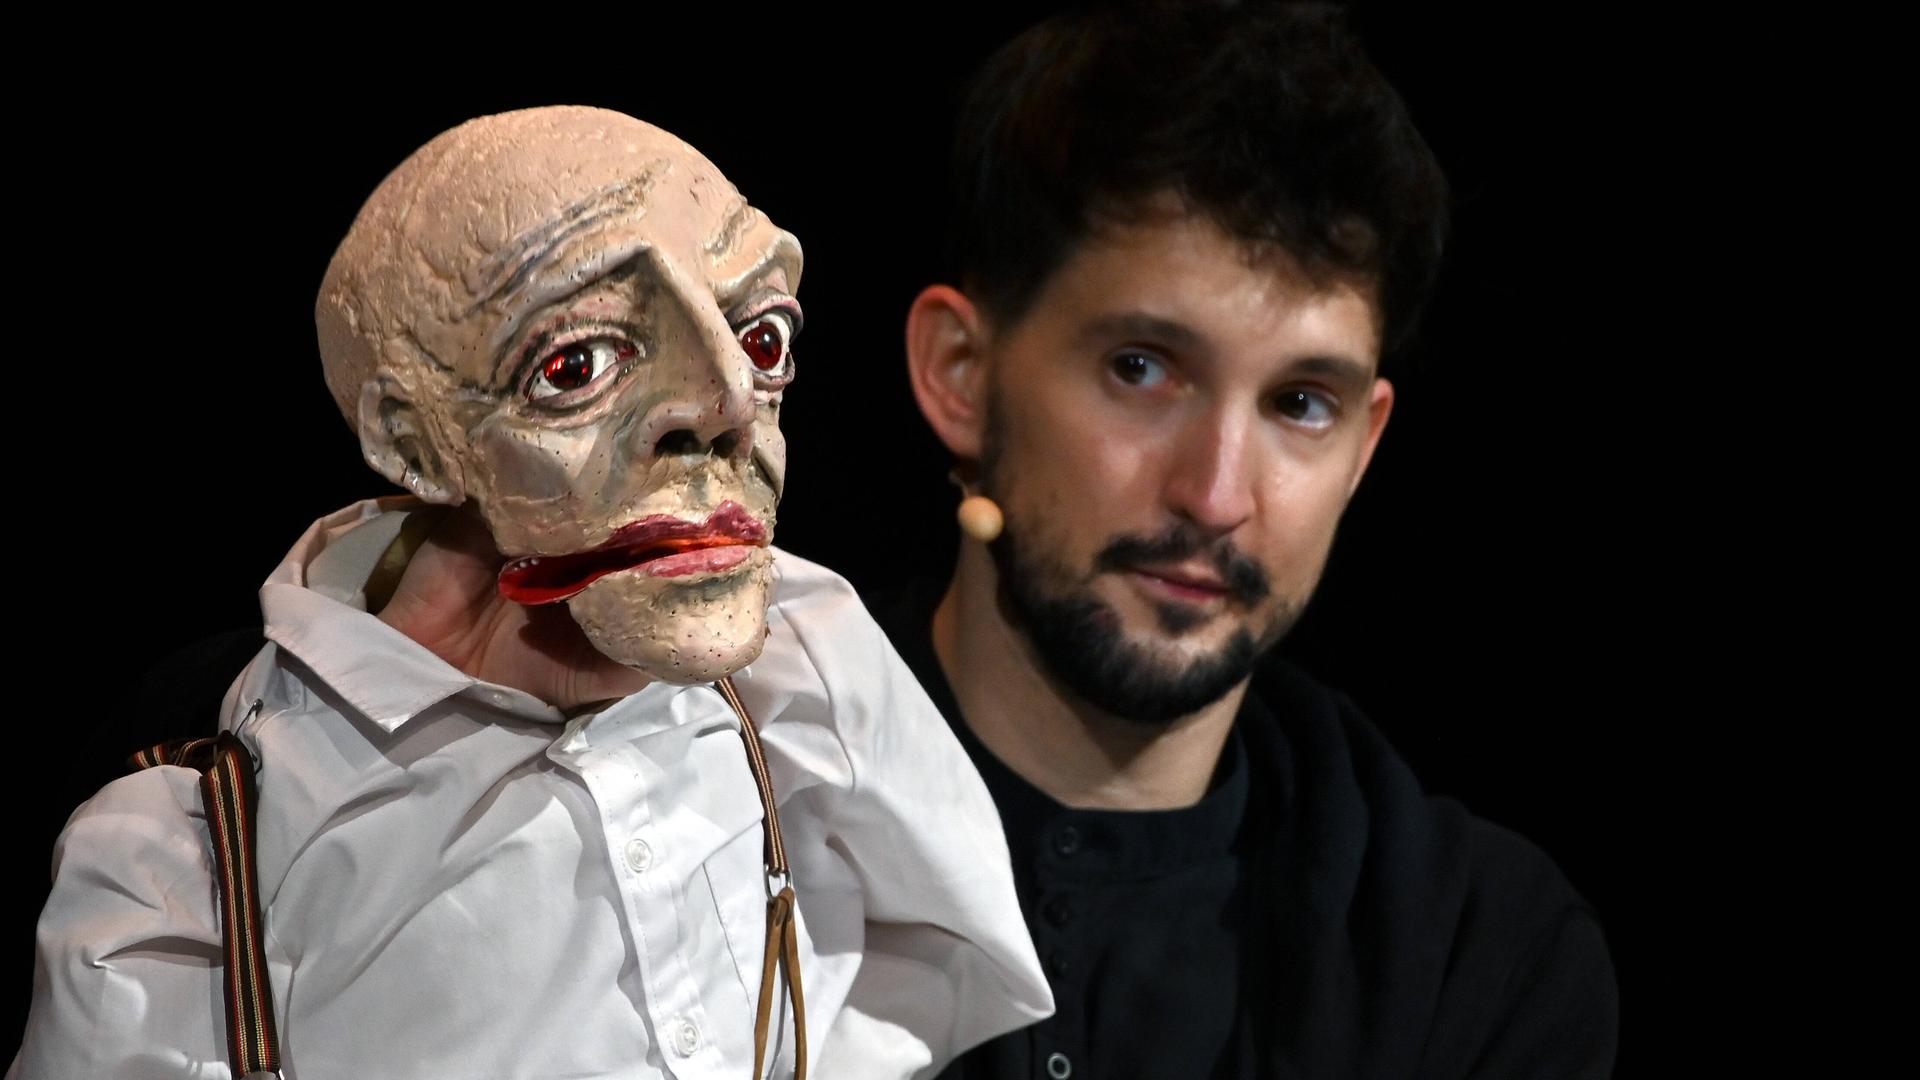 Der Puppenspieler Nikolaus Habjan mit einer Puppe bei einem Auftritt vor schwarzem Hintergrund.